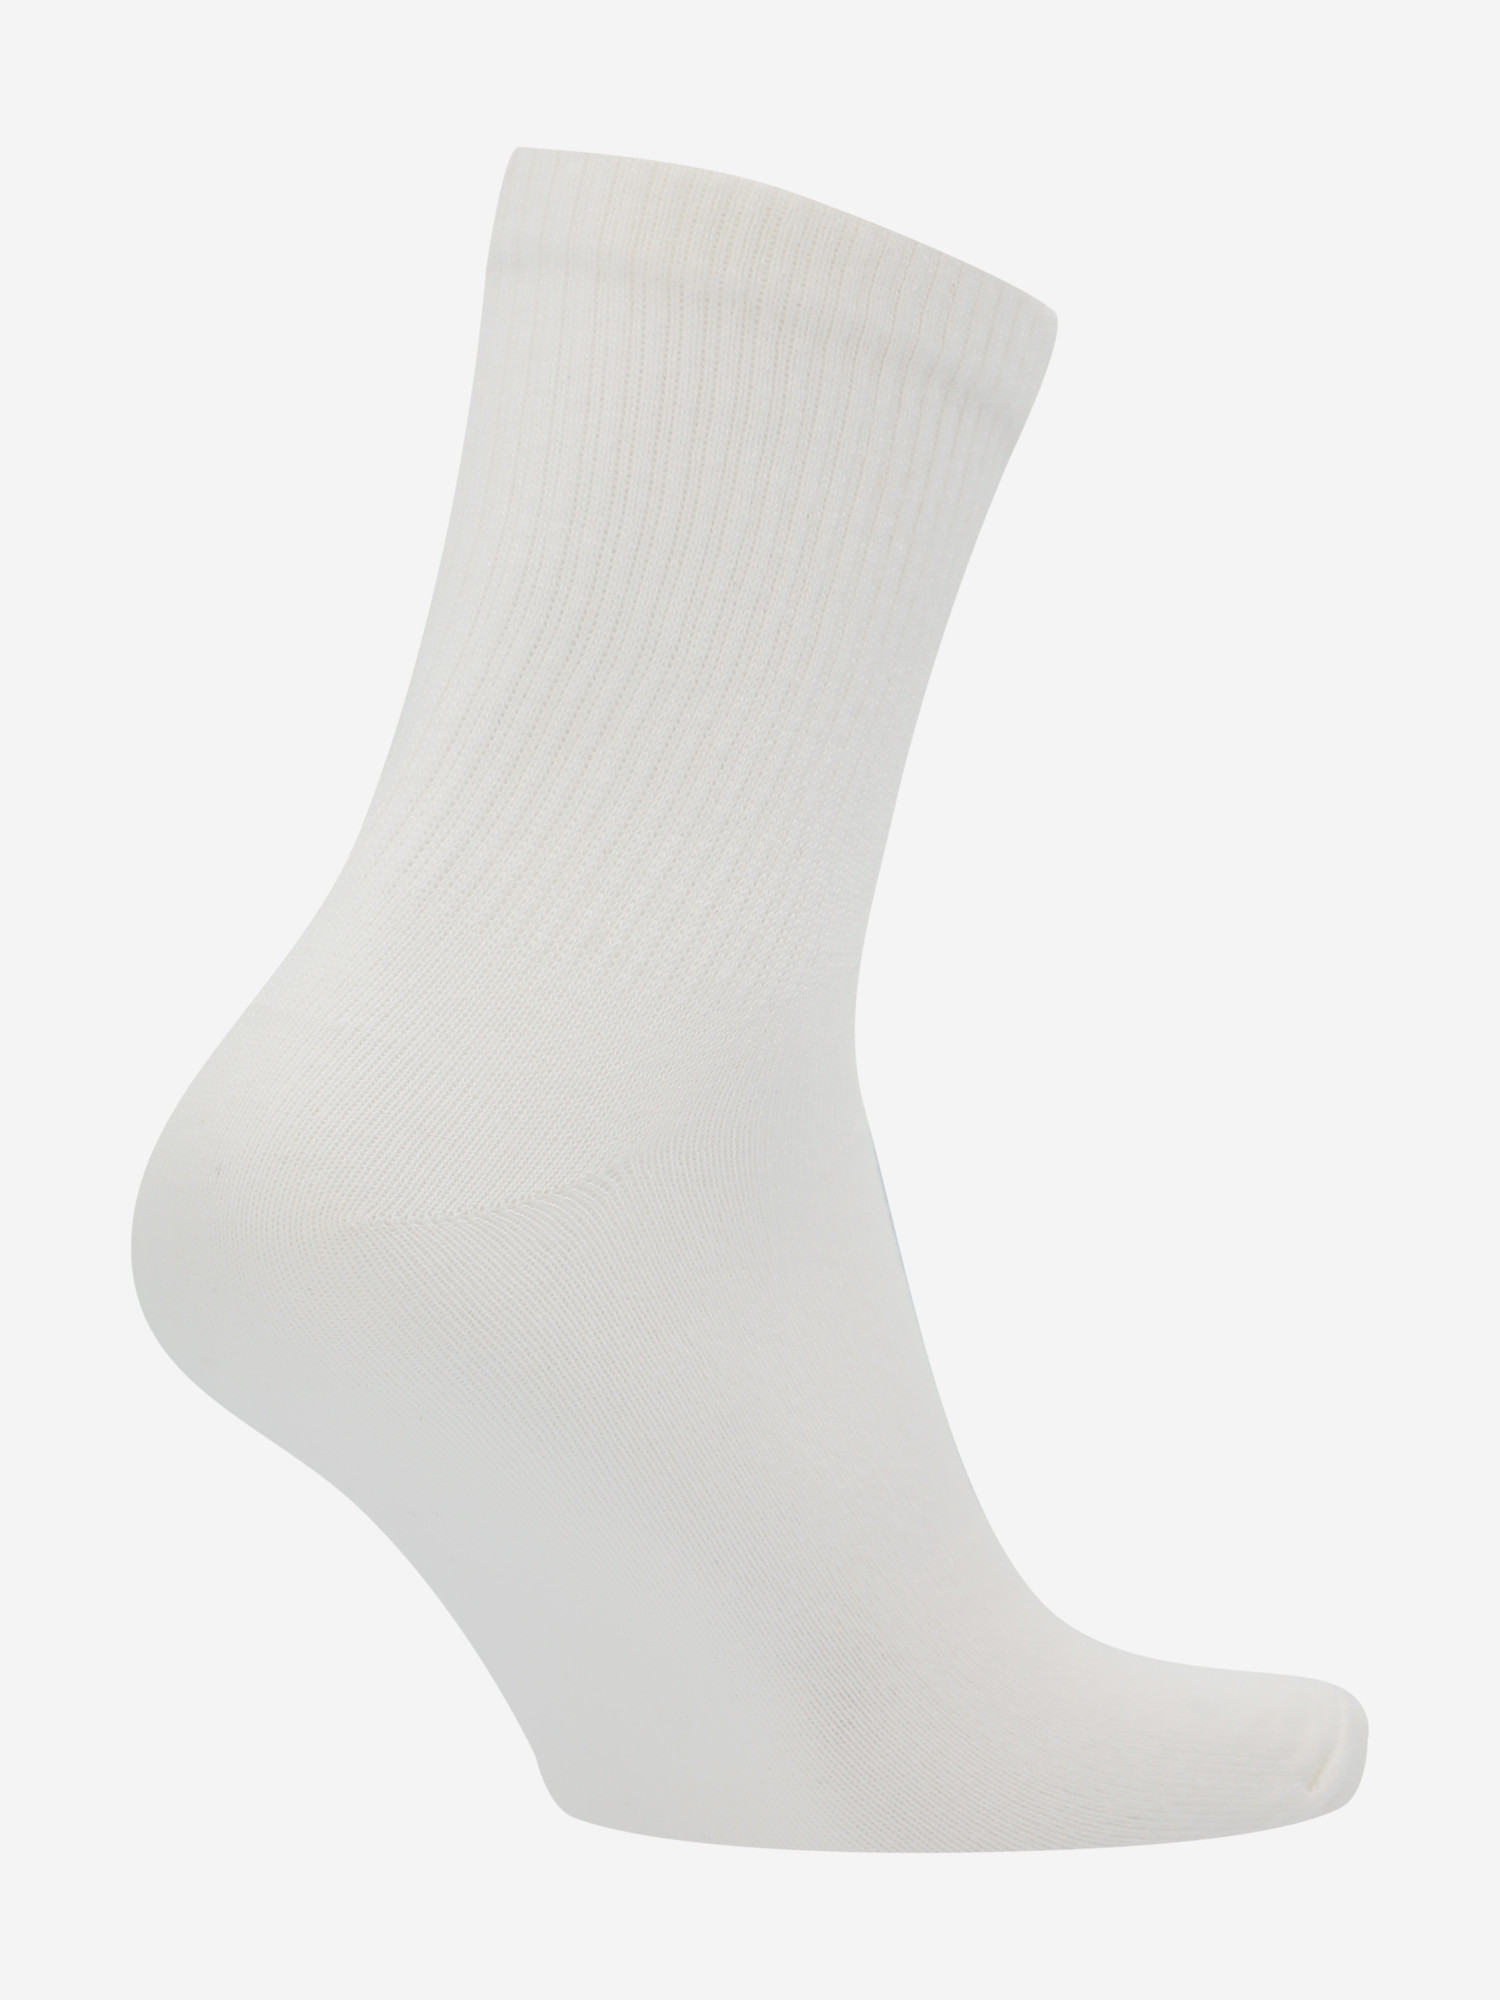 Шкарпетки Termit, 1 пара